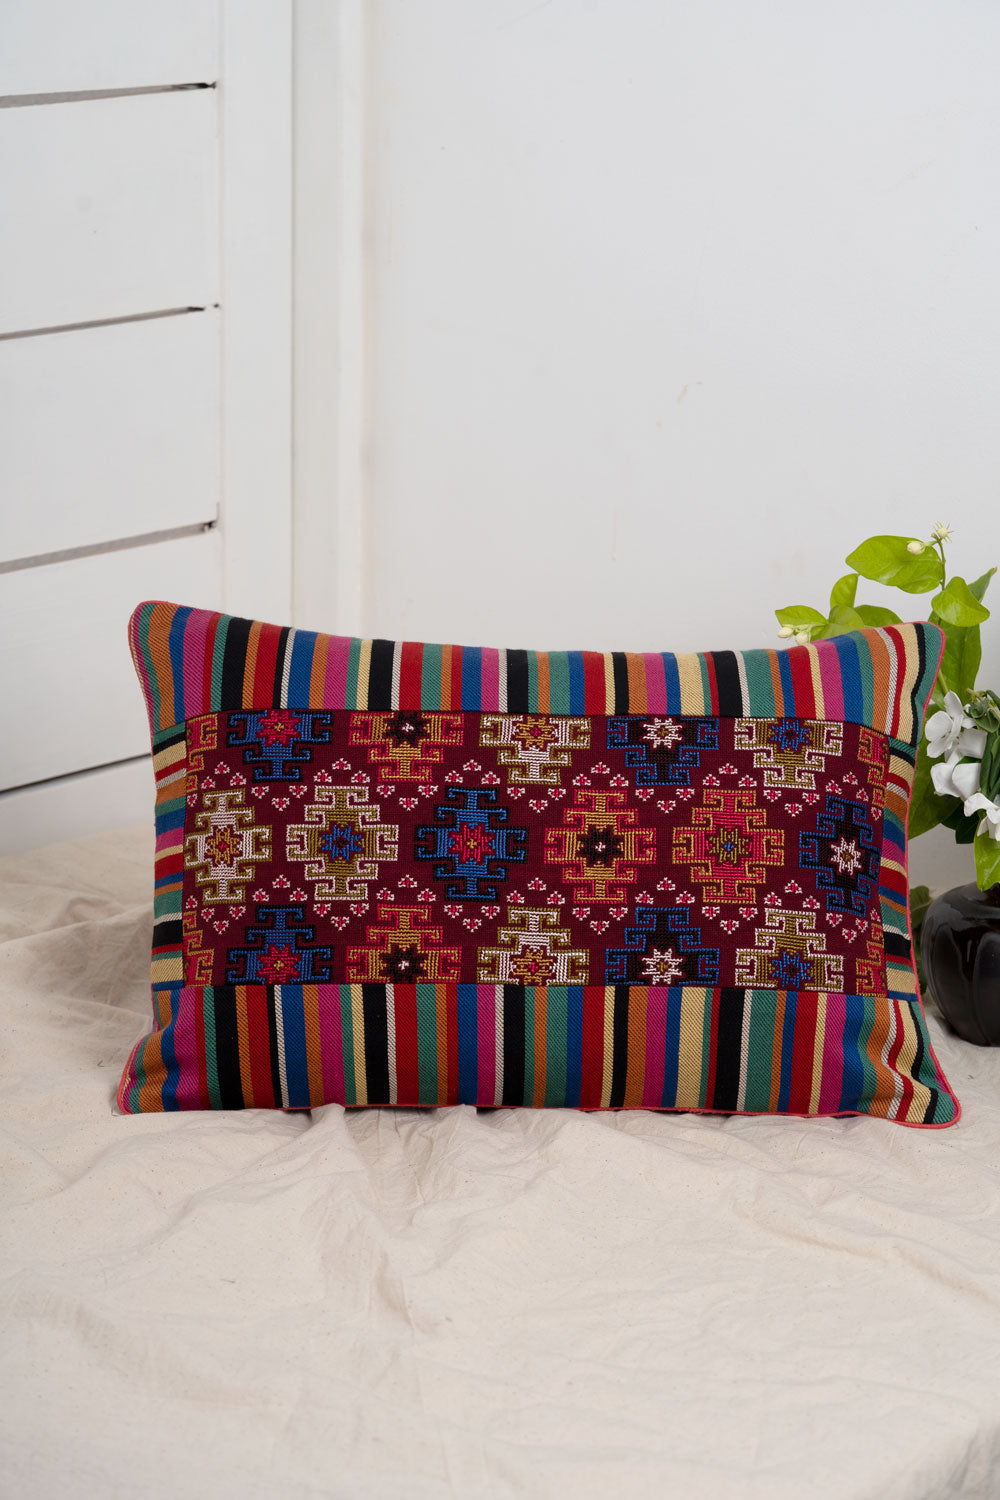 Jat Garasiya Hand Embroidered Cushion / Pillow Cover